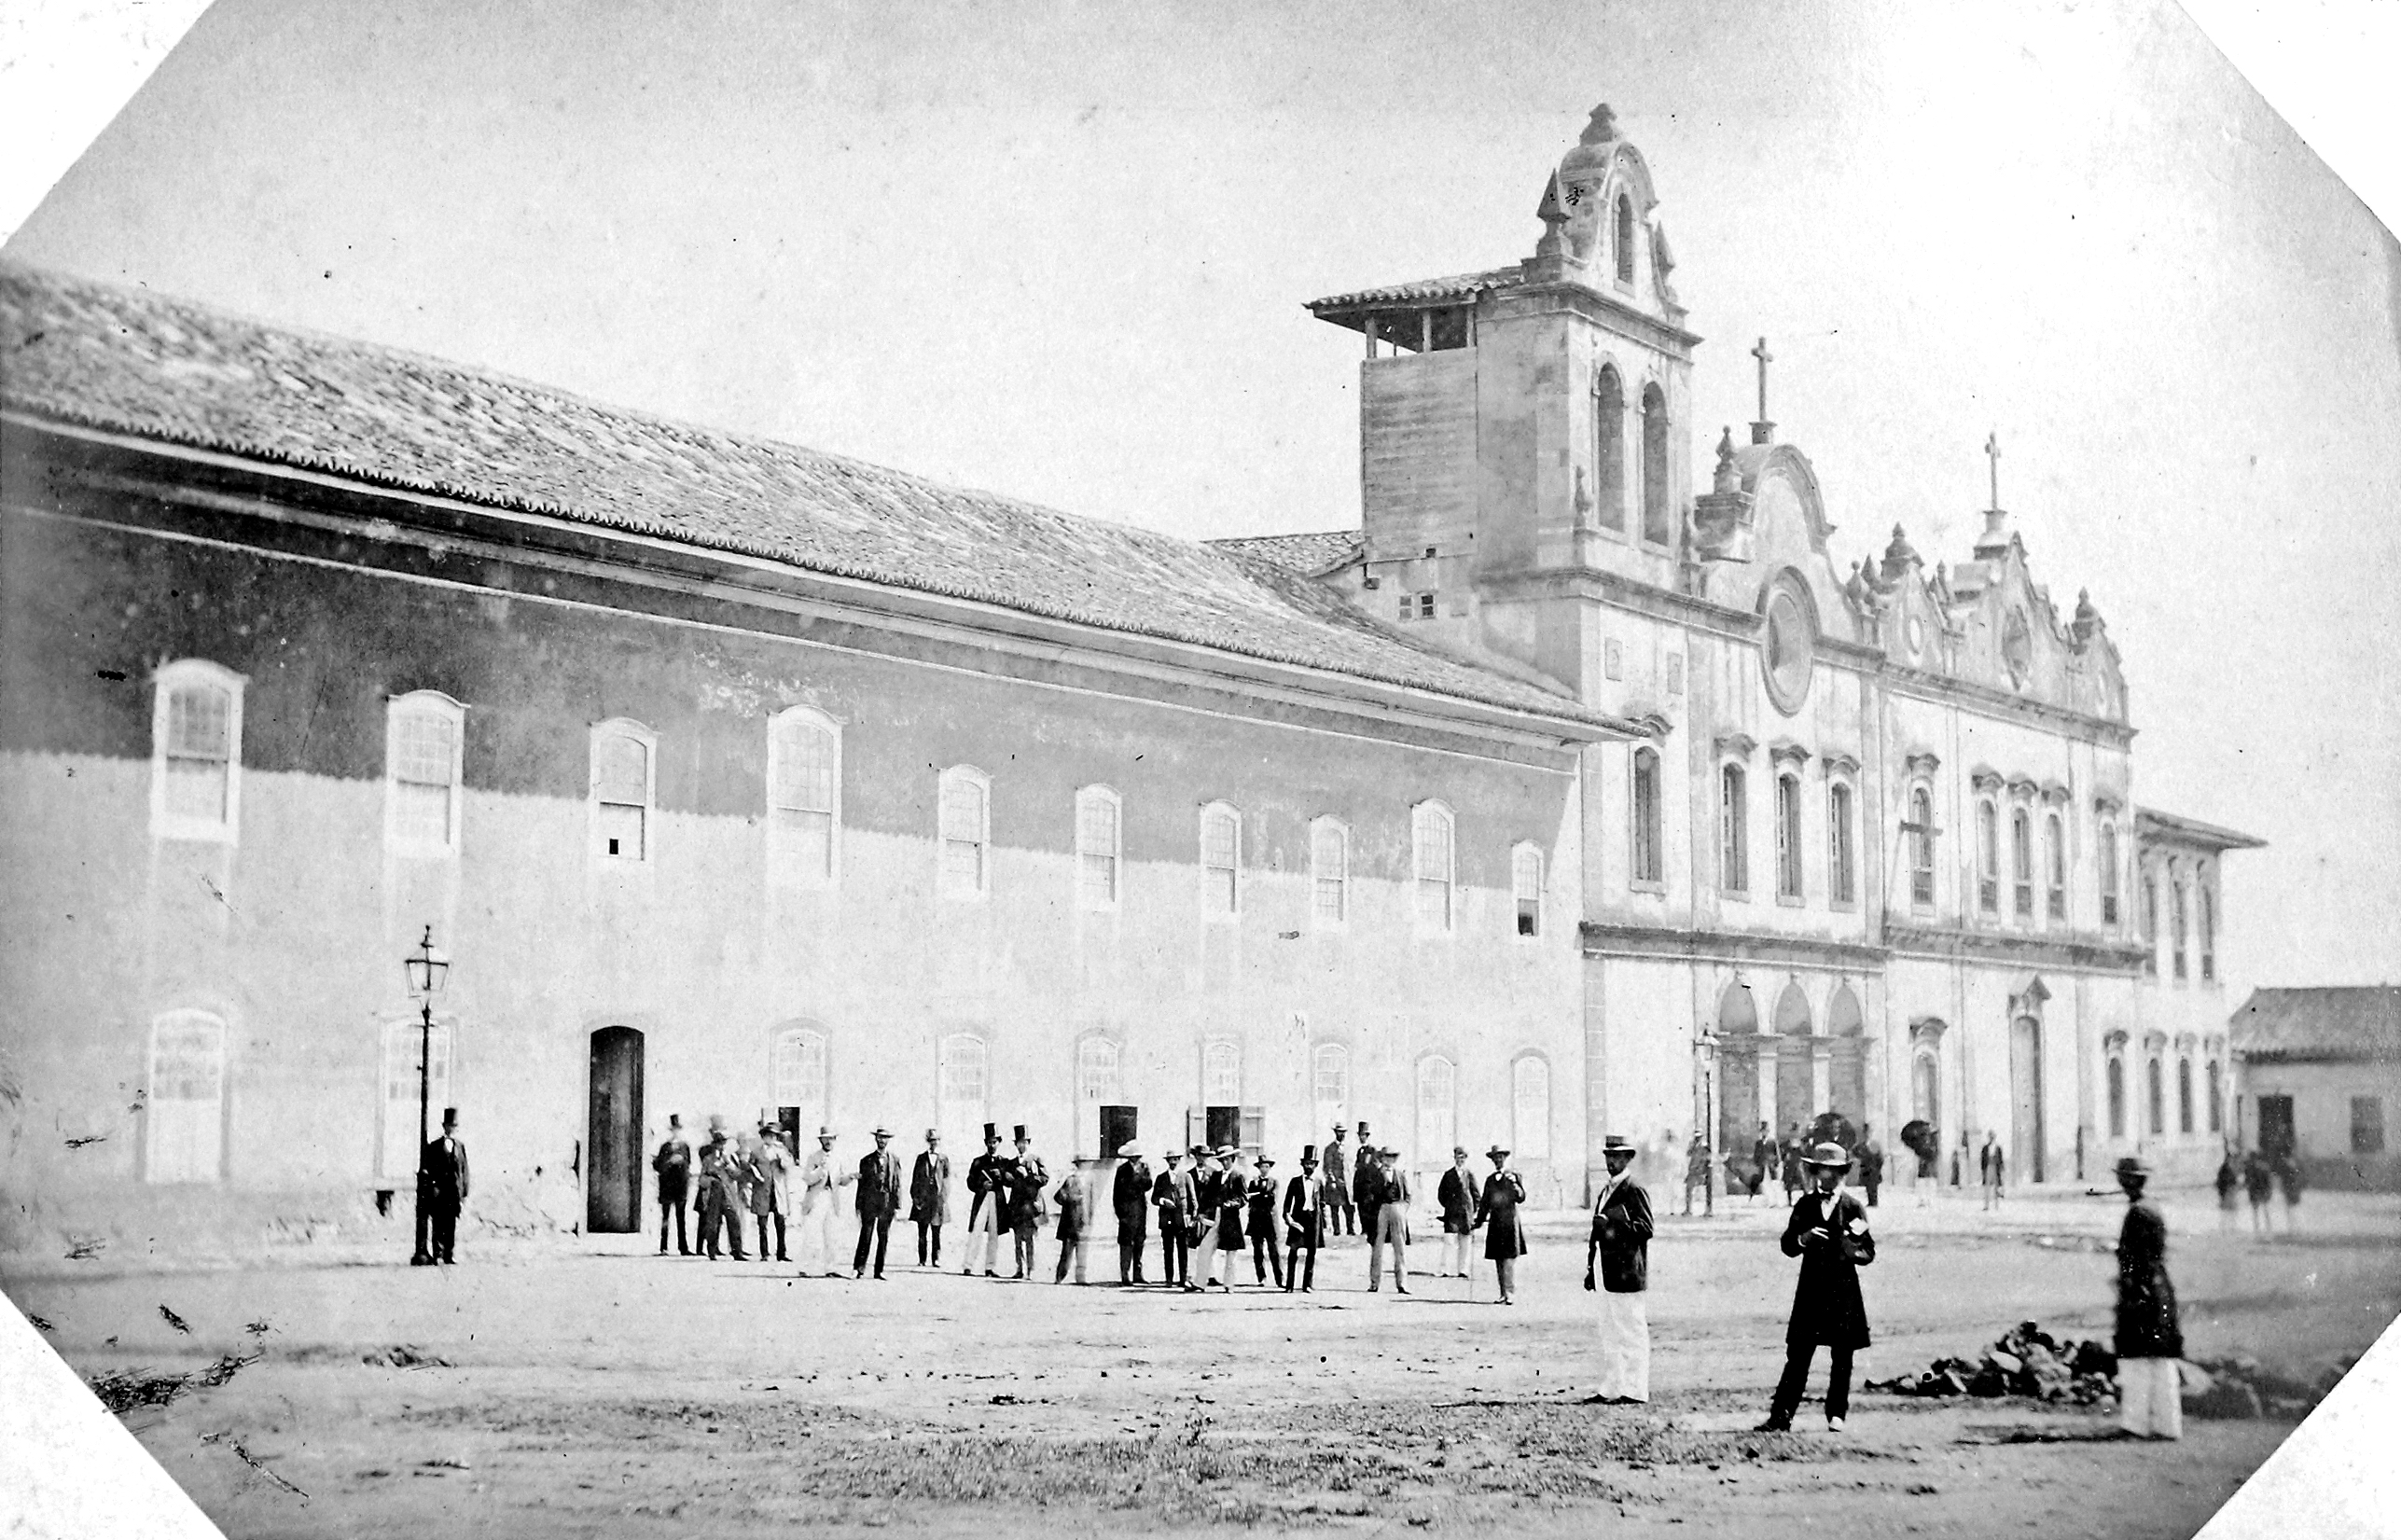 Convento de São Francisco / Faculdade de Direito (1862). Fotografia: Militão Augusto de Azevedo. Acervo Instituto Moreira Salles.